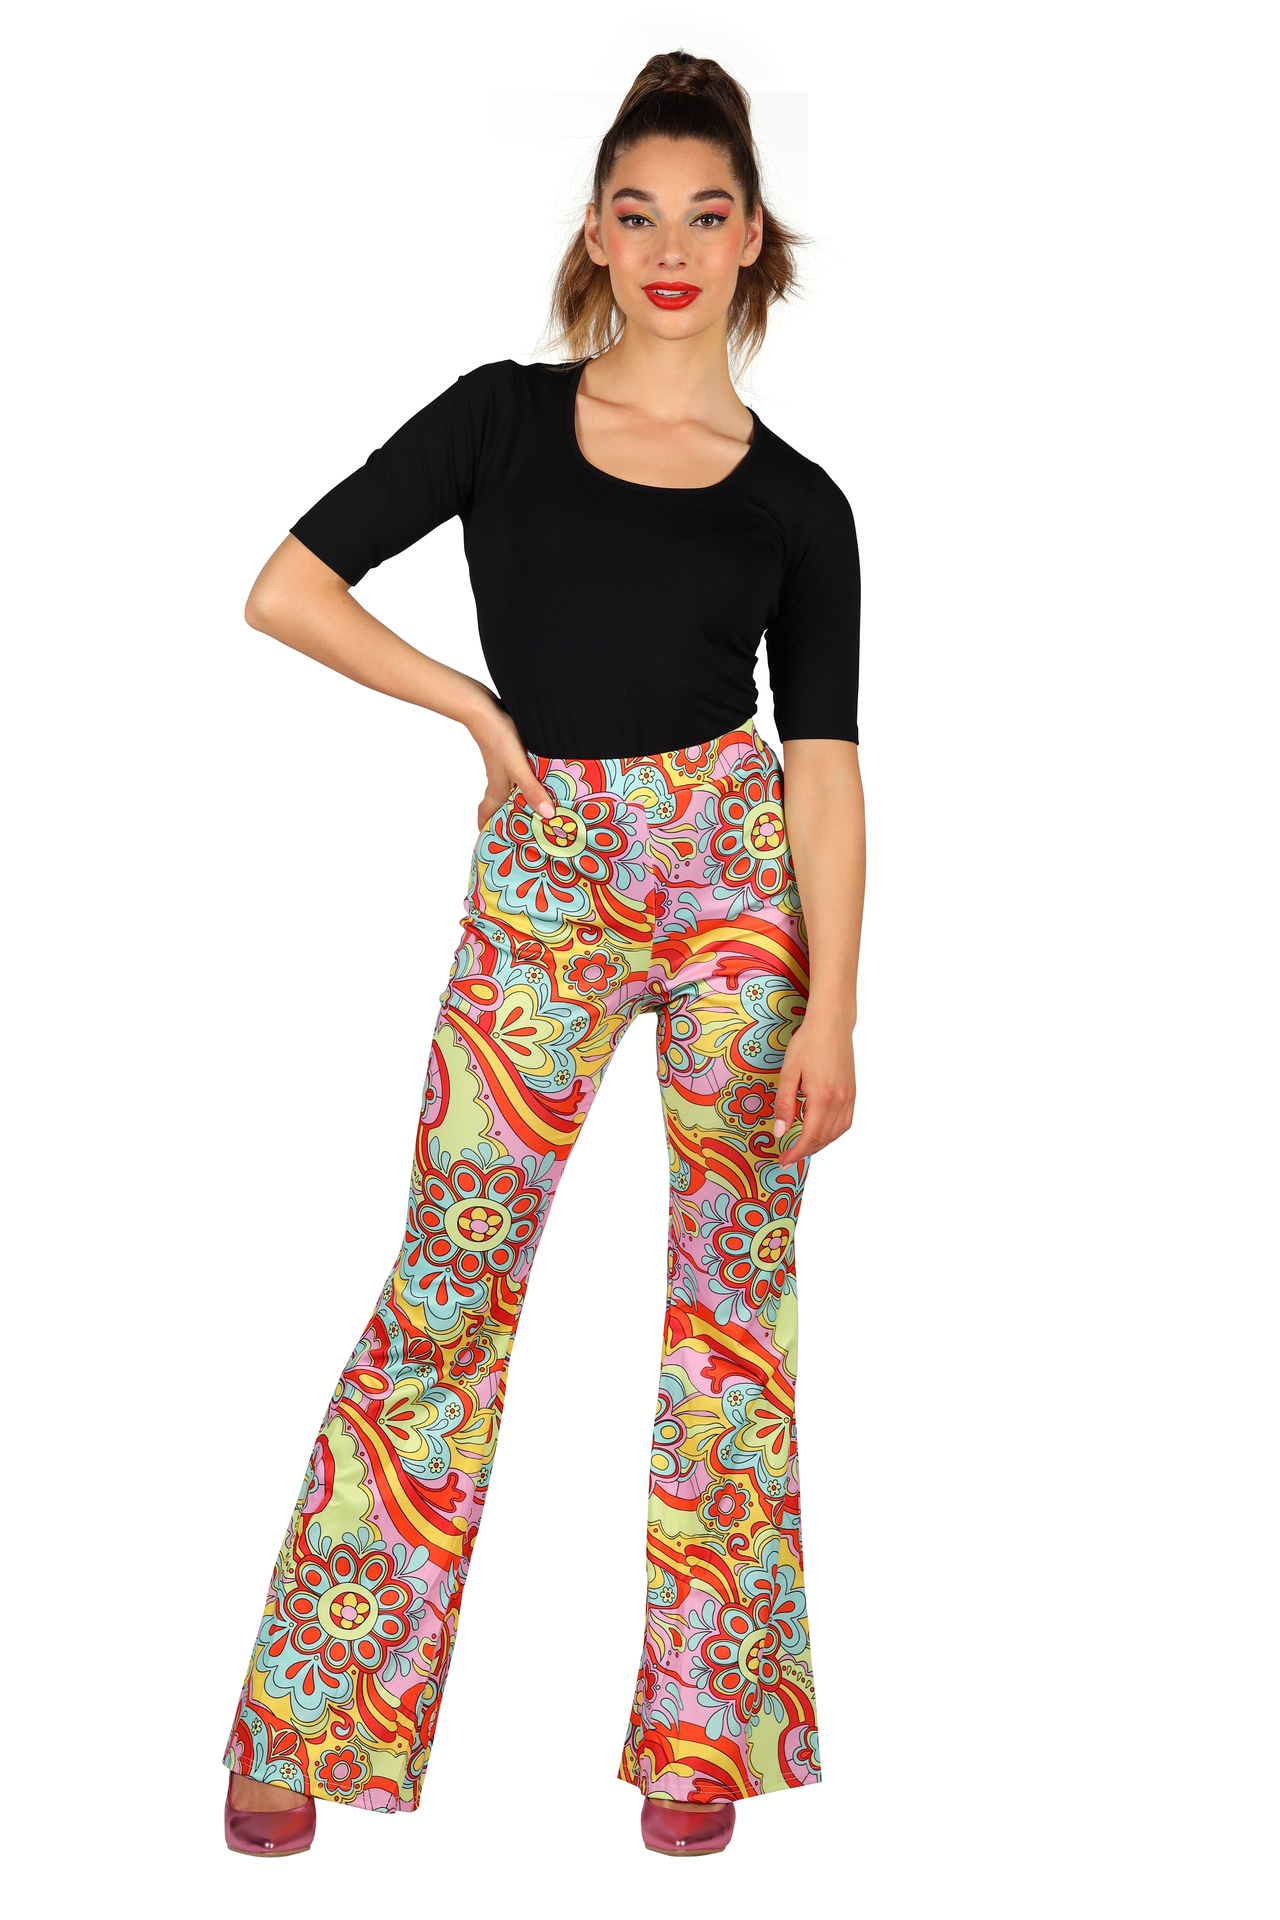 SMIFFYS - Flower Power hippie broek voor dames - S - Volwassenen